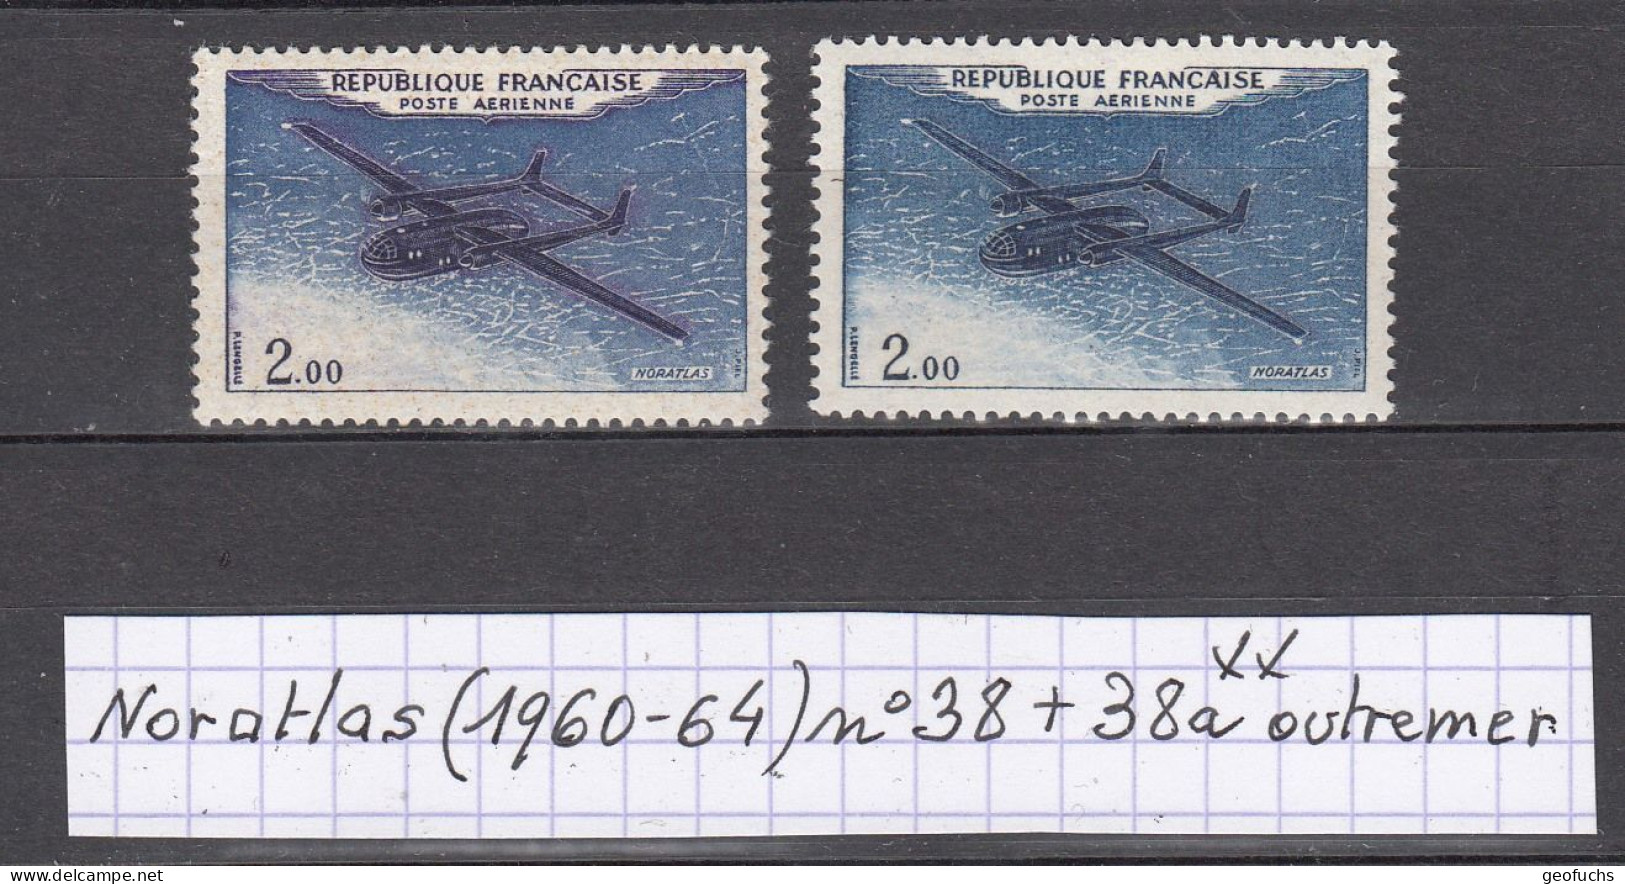 France Prototypes Noratlas (1960-64) Poste Aérienne Y/T Variété N° 38 + 38a (outremer) Neufs ** - Ongebruikt